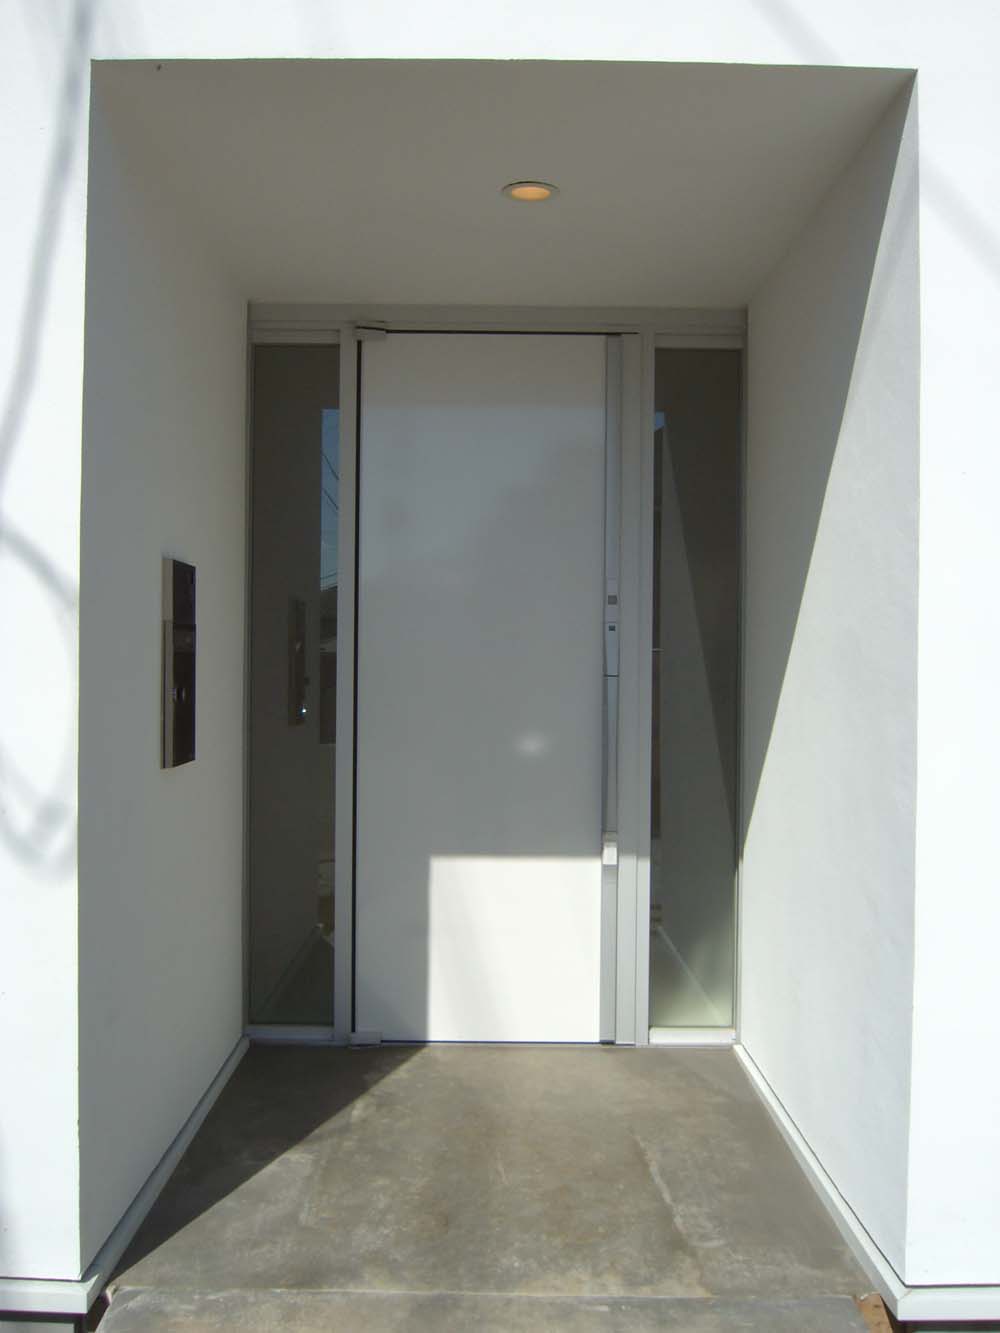 Qull style 「自分らしい家」 labかっこいい玄関ドア